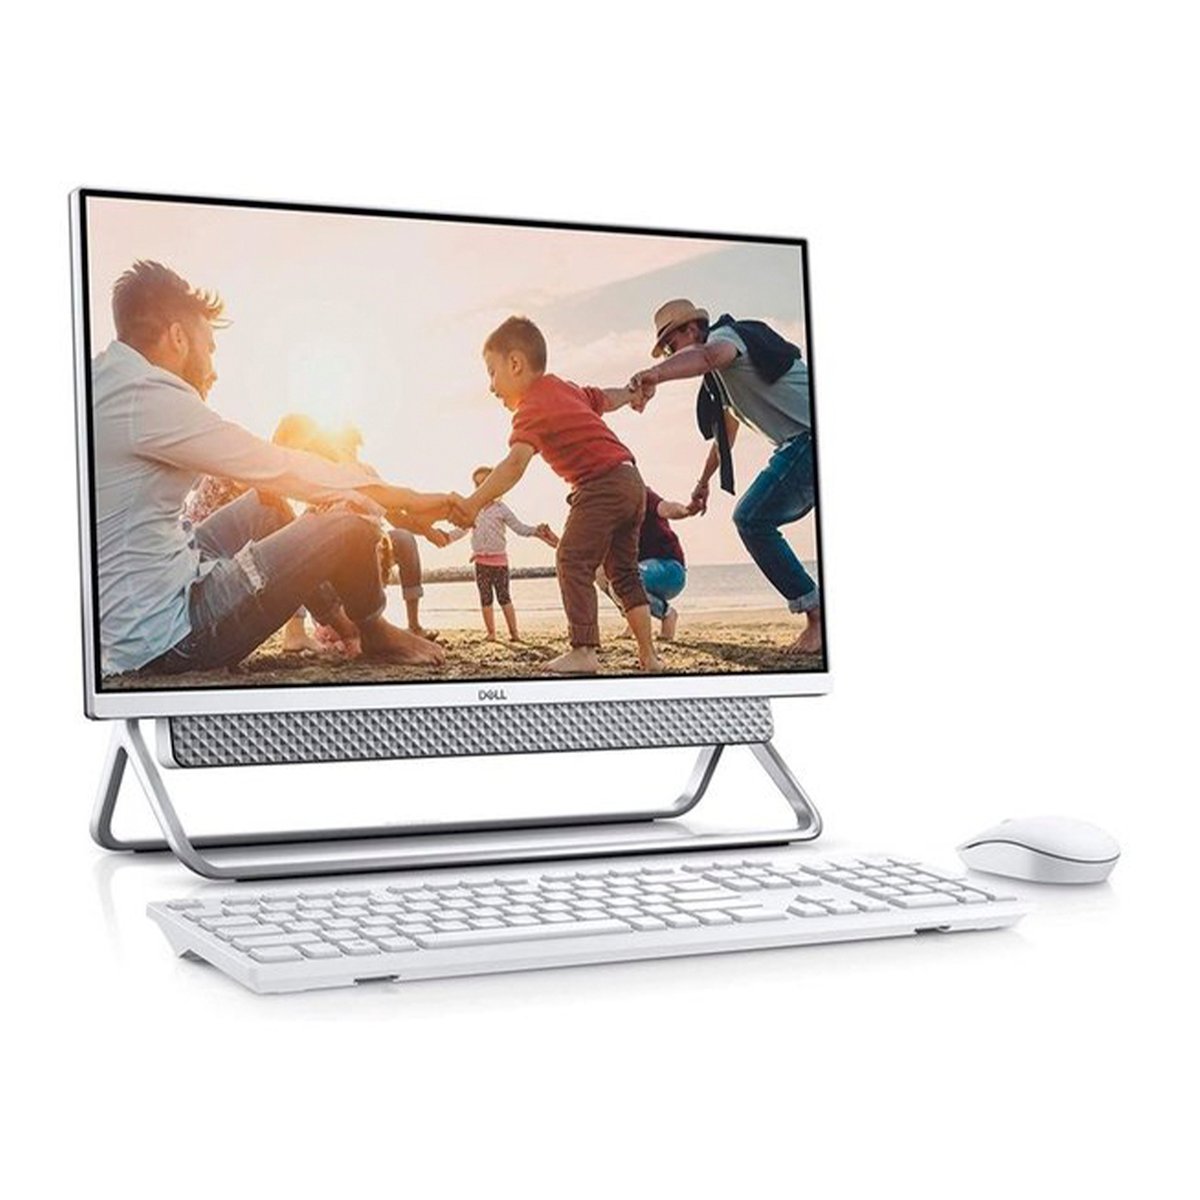 Dell All-in-One Desktop-5400-INS-6500-SLV-Core i5-1135G7,8GB RAM,1TB HDD,256 GB SSD,23.8" FHD Display,Windows 10,Silver